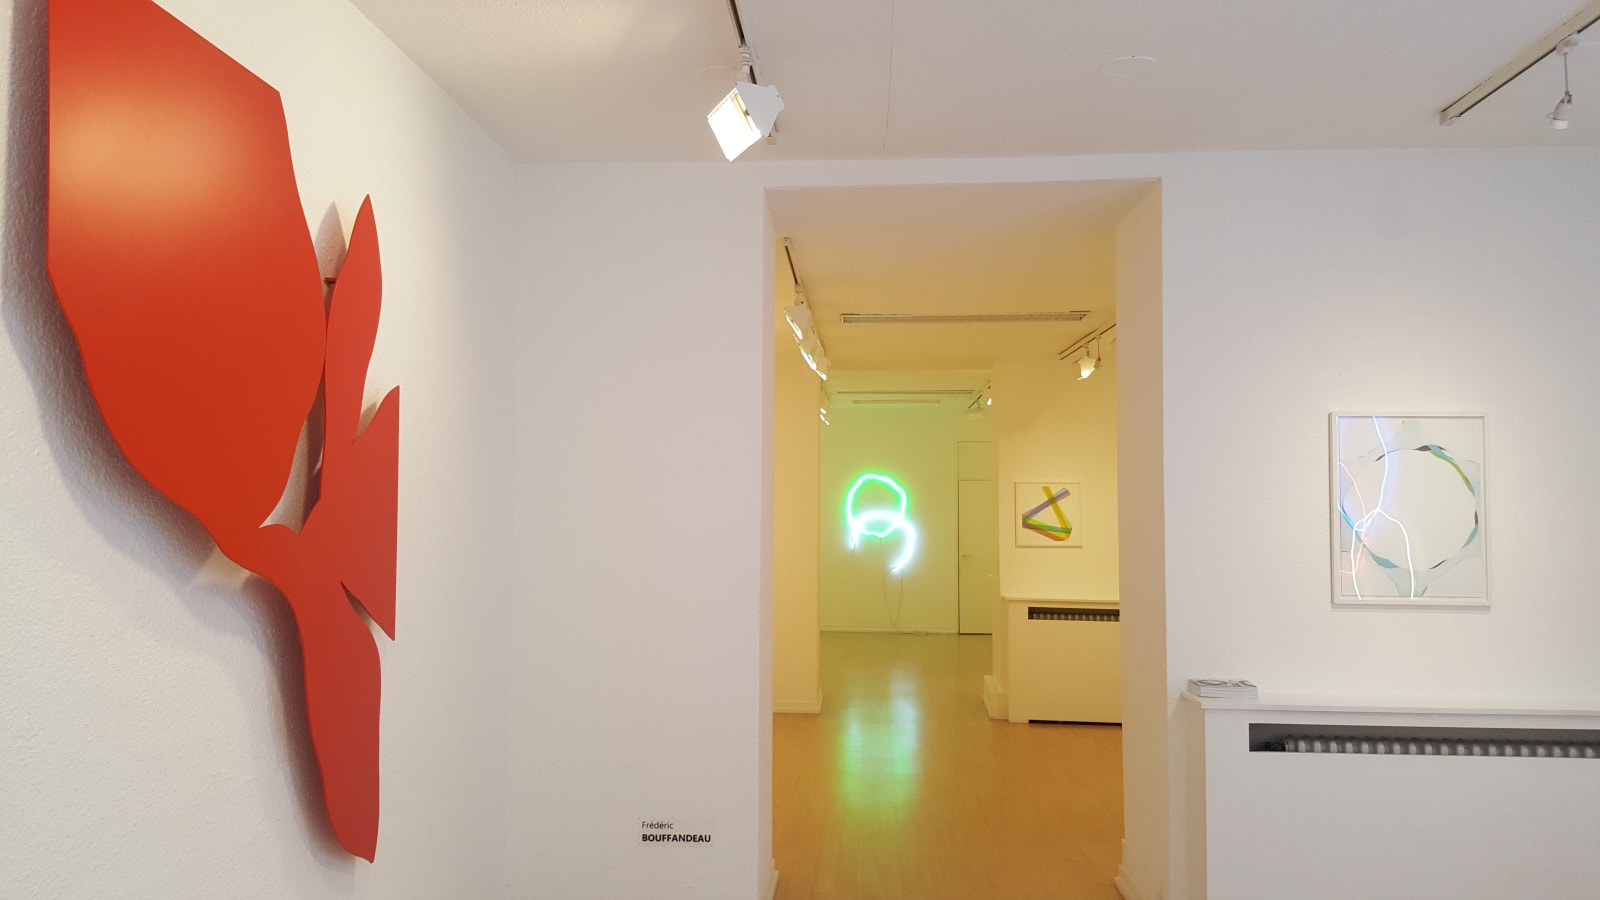 Frédéric Bouffandeau / Peintures, sculptures et néons, exposition personnelle / Oniris 2017